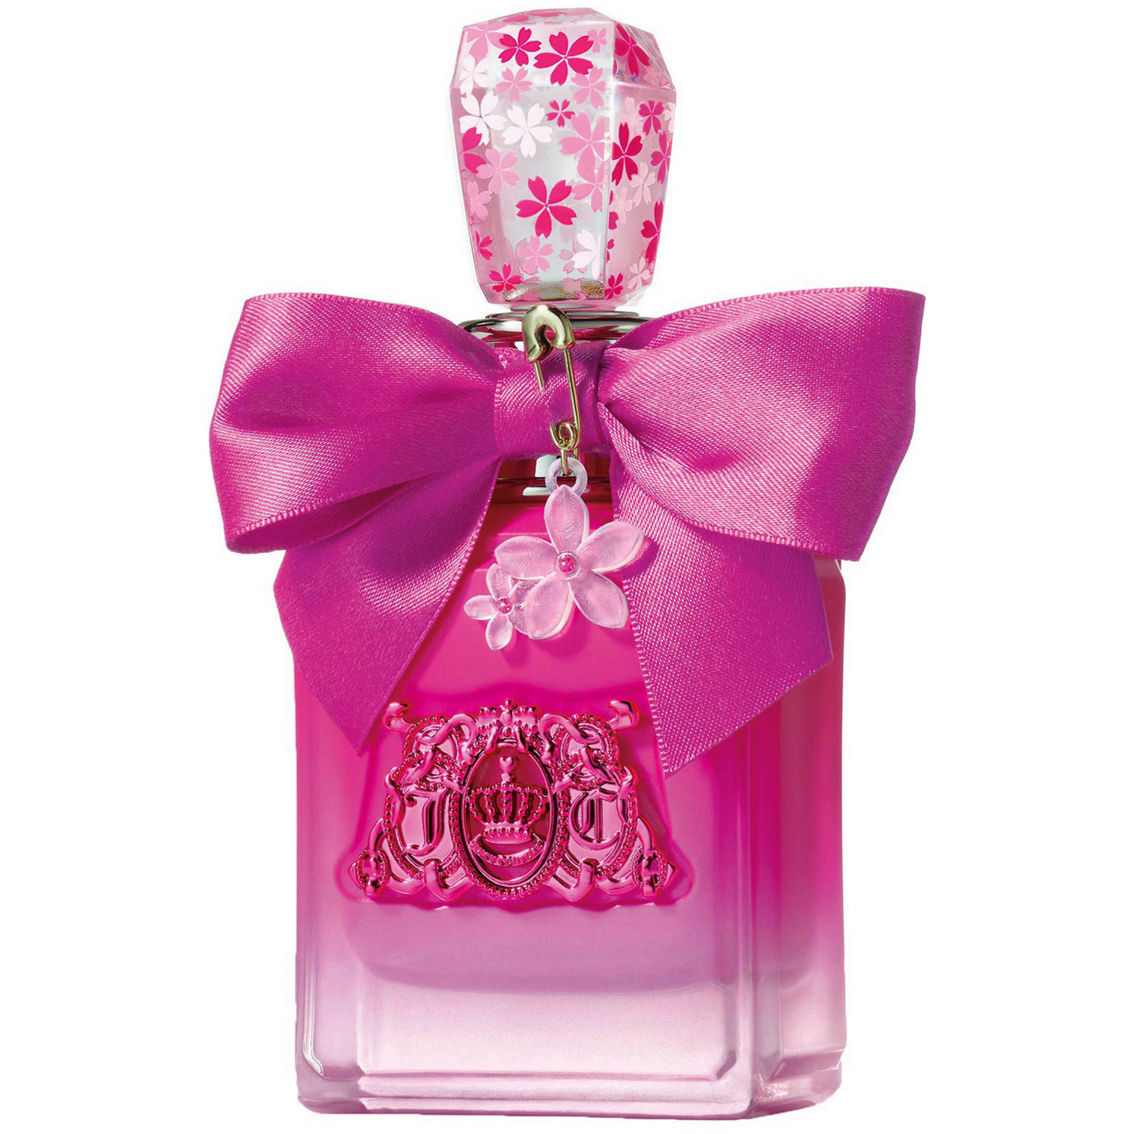 Juicy Couture Viva La Juicy Petals Please Eau de Parfum Spray 3.4 oz. - Image 1 of 2